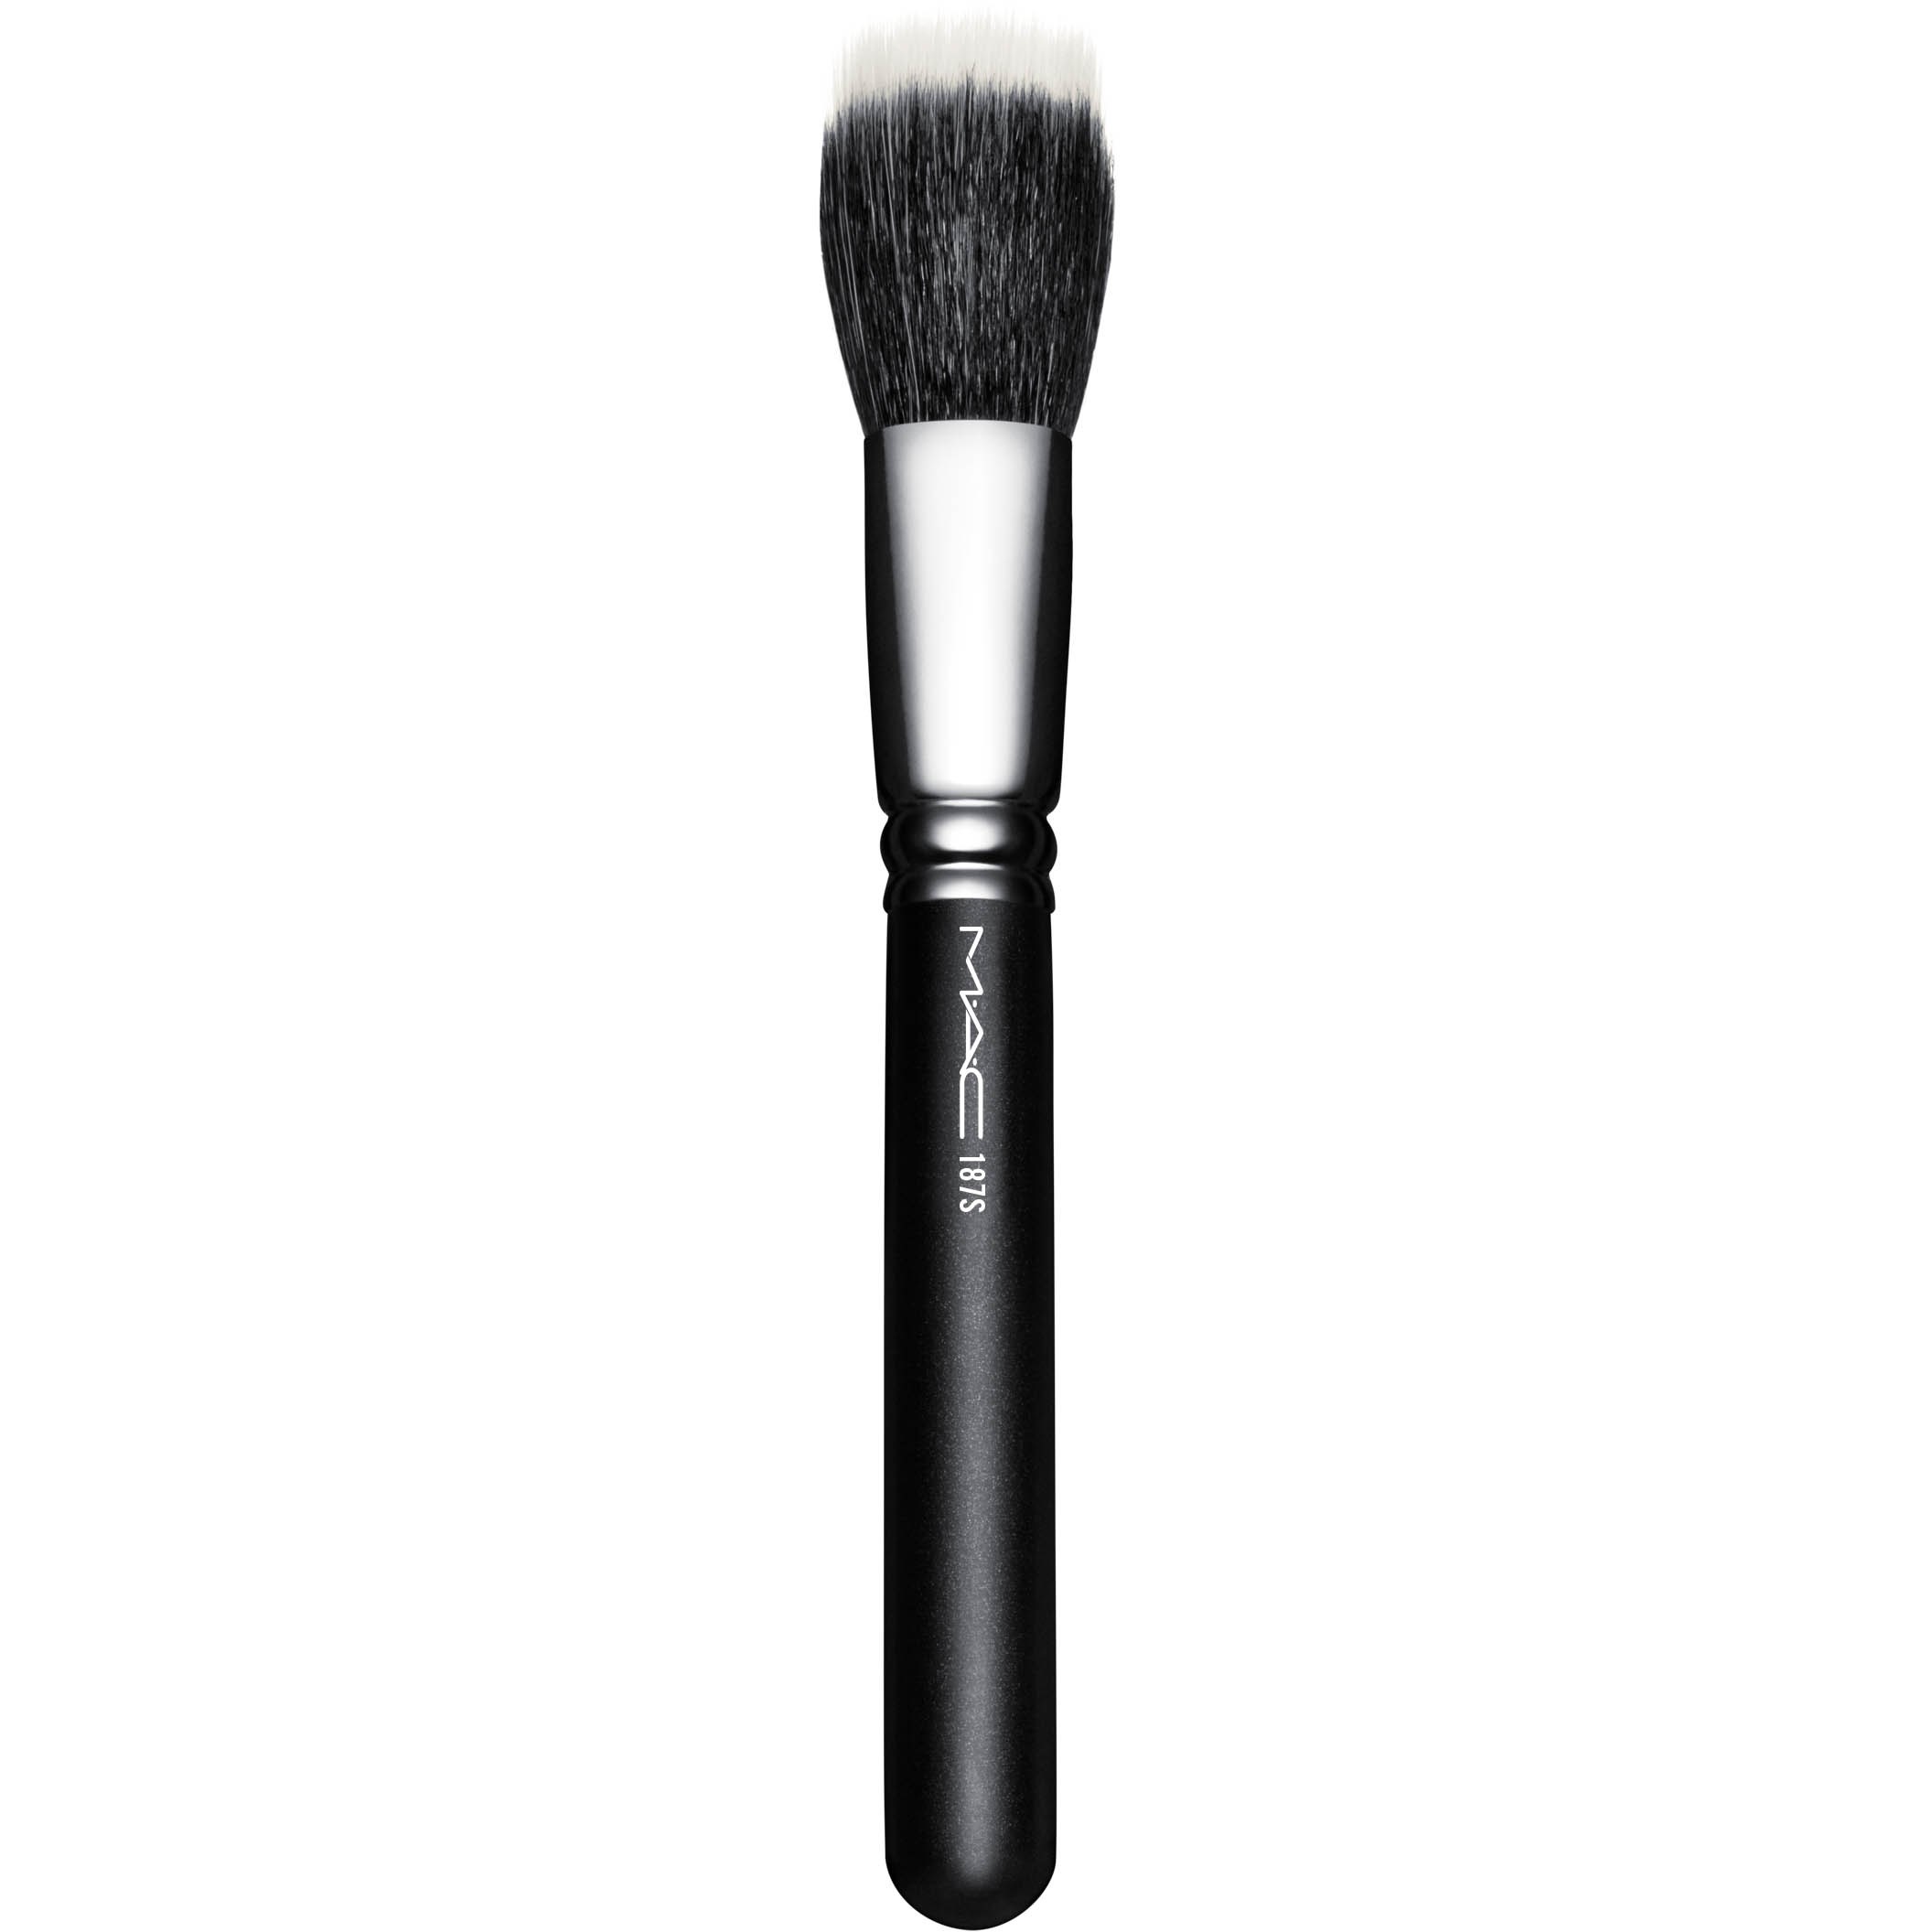 Bilde av Mac Cosmetics Brushes 187s Duo Fibre Face